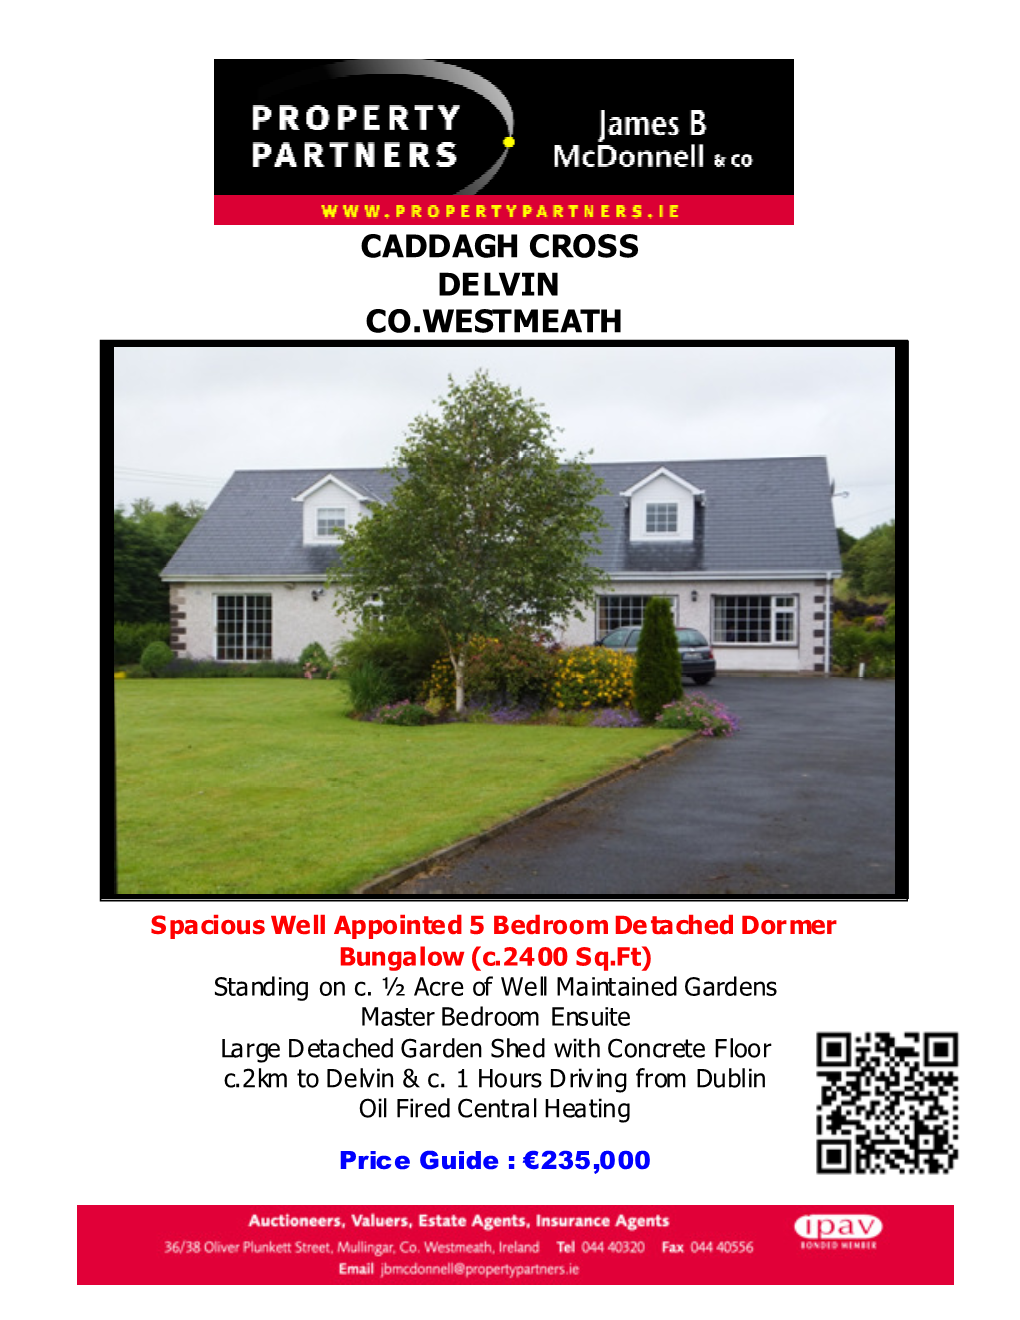 Caddagh Cross Delvin Co.Westmeath